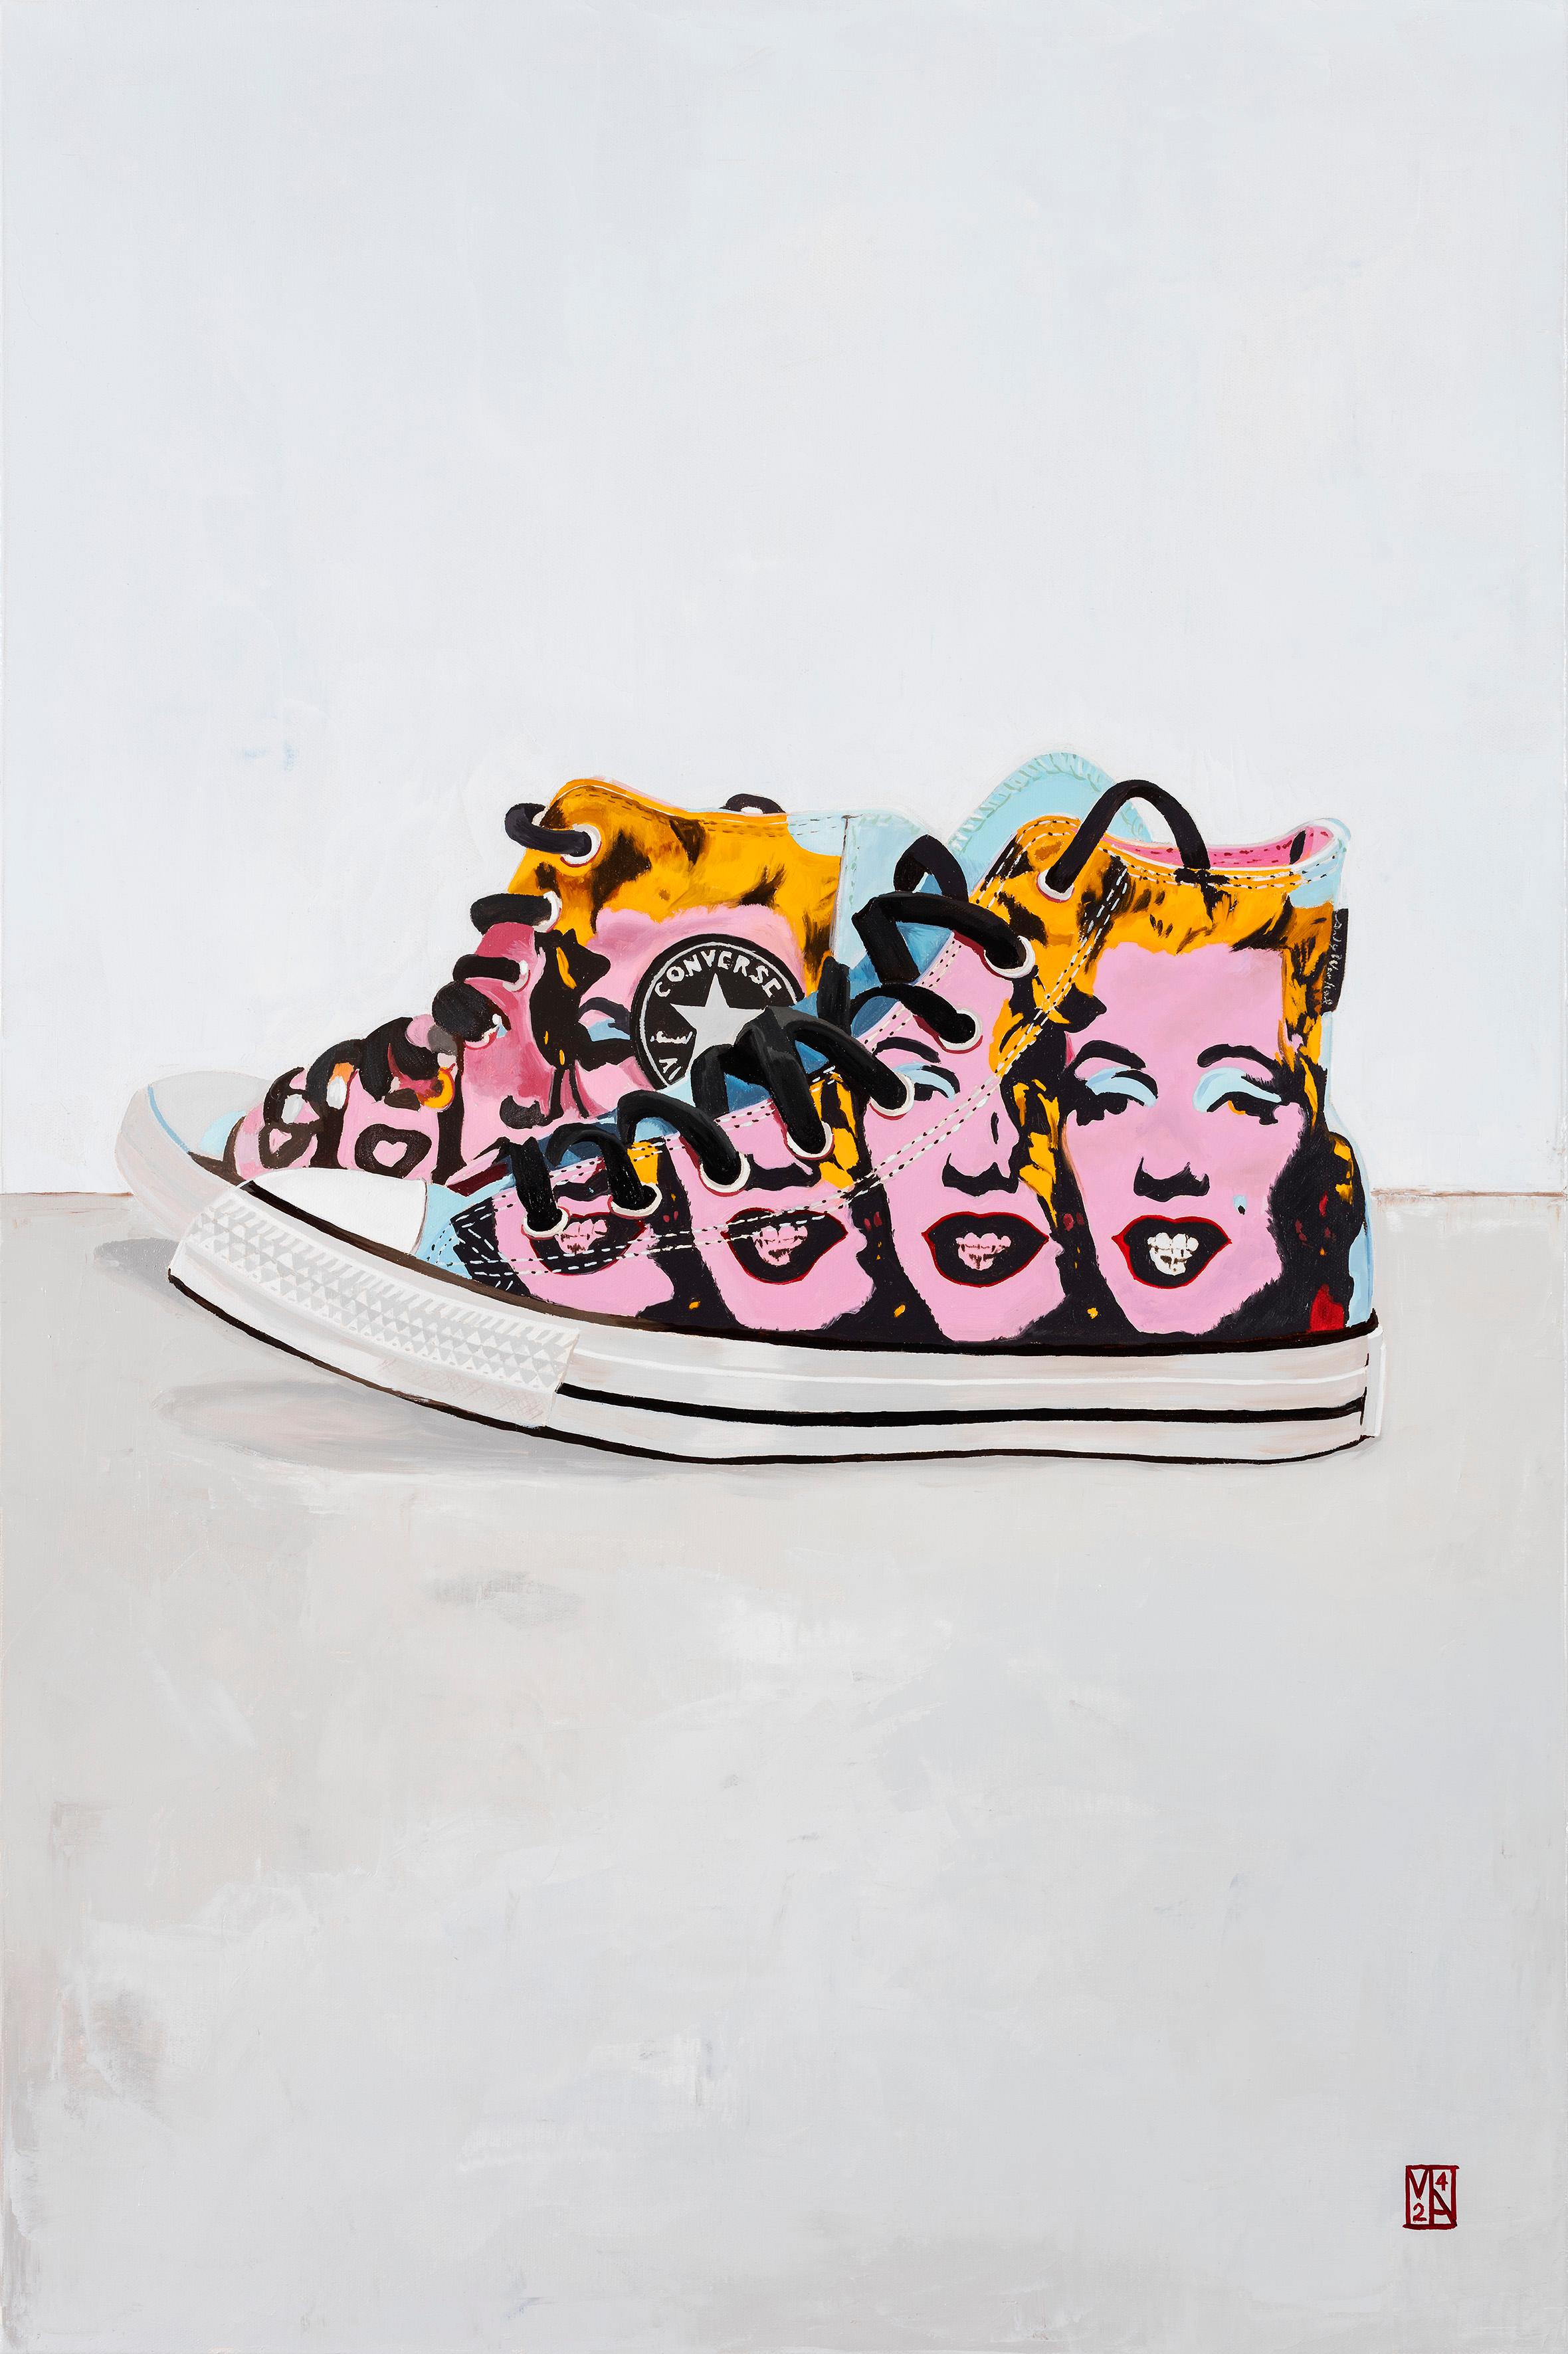 Entrez dans un monde où la culture pop emblématique et l'art intemporel convergent avec les "Converse Marilyn Sneakers Art" - un chef-d'œuvre captivant de l'artiste renommé Martin Allen. Cette œuvre d'art unique allie le charme légendaire de Marilyn